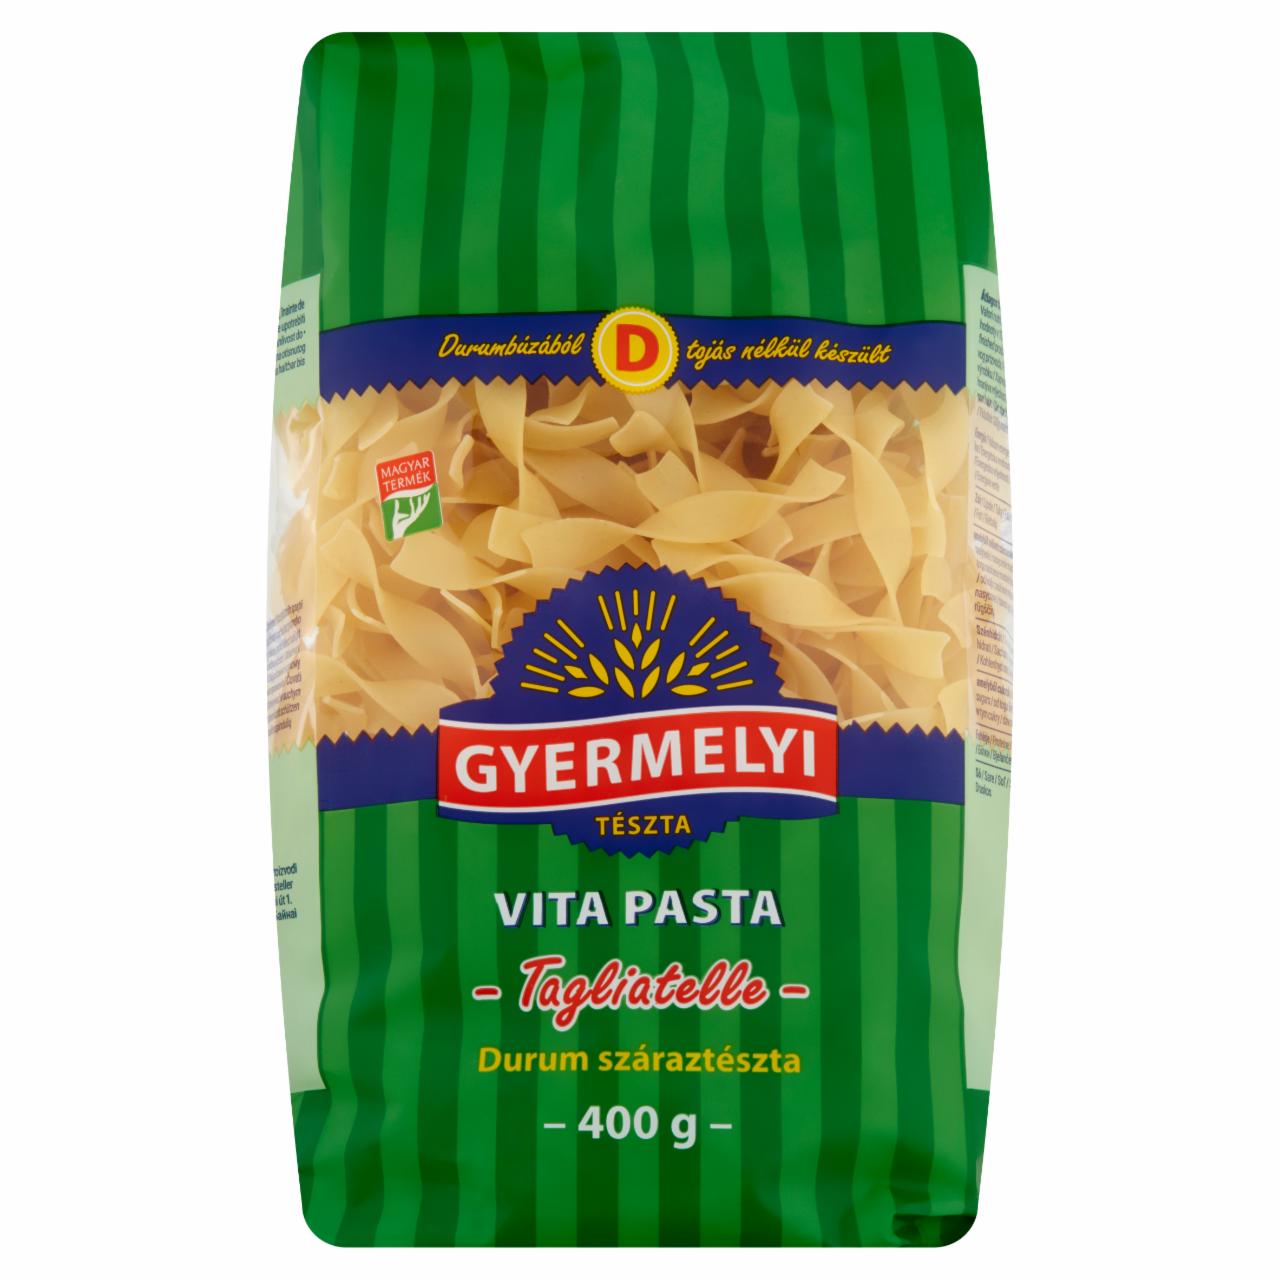 Képek - Gyermelyi Vita Pasta Tagliatelle durum száraztészta 400 g